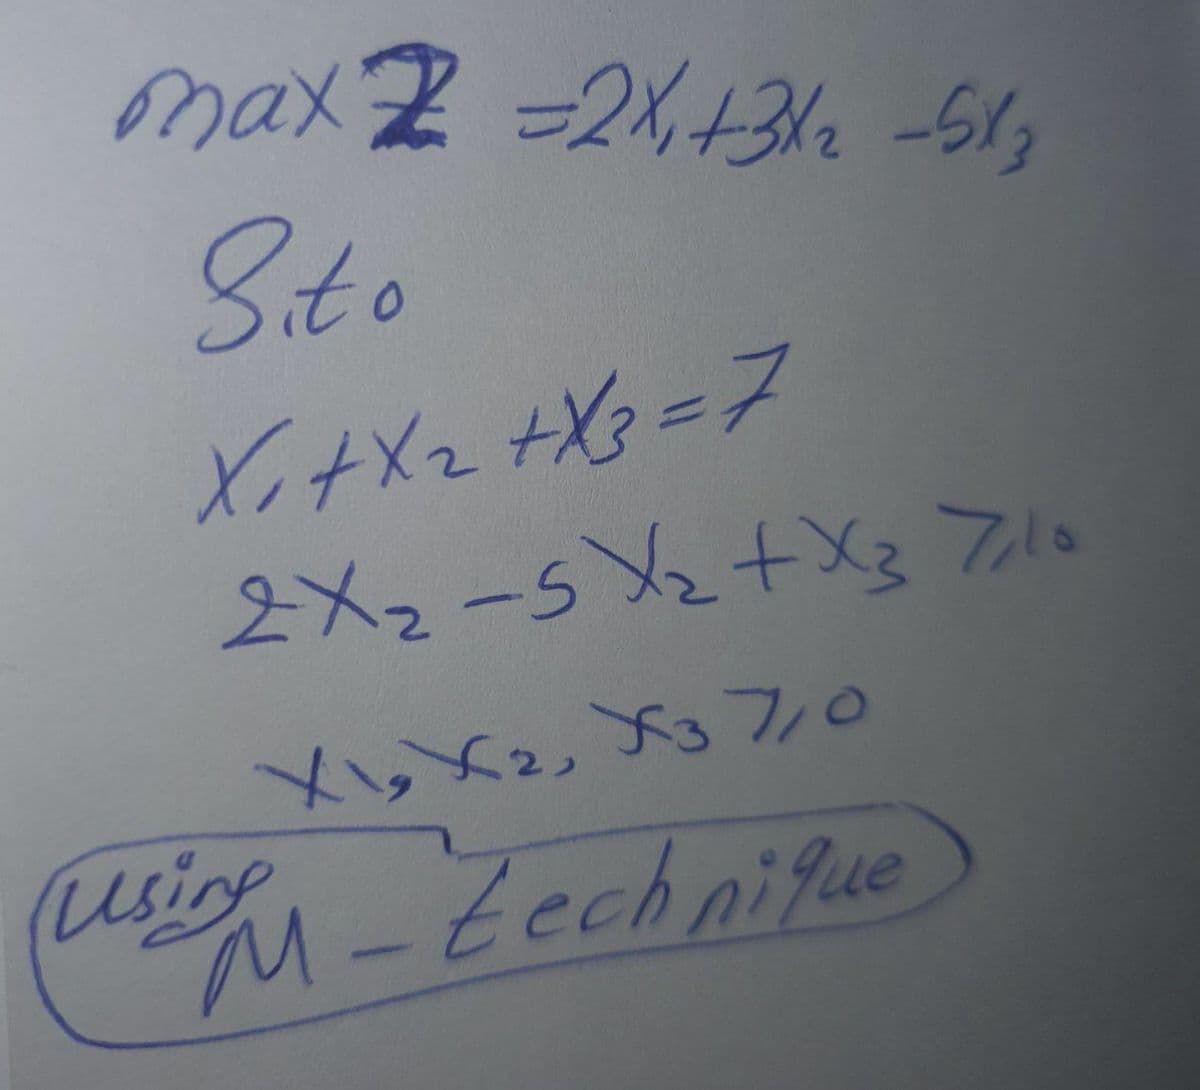 M-Eechnifue
Sito
2メ2-5Y2+X3フ
Xi,Xz, Xg70
(usigh_Zechniue
